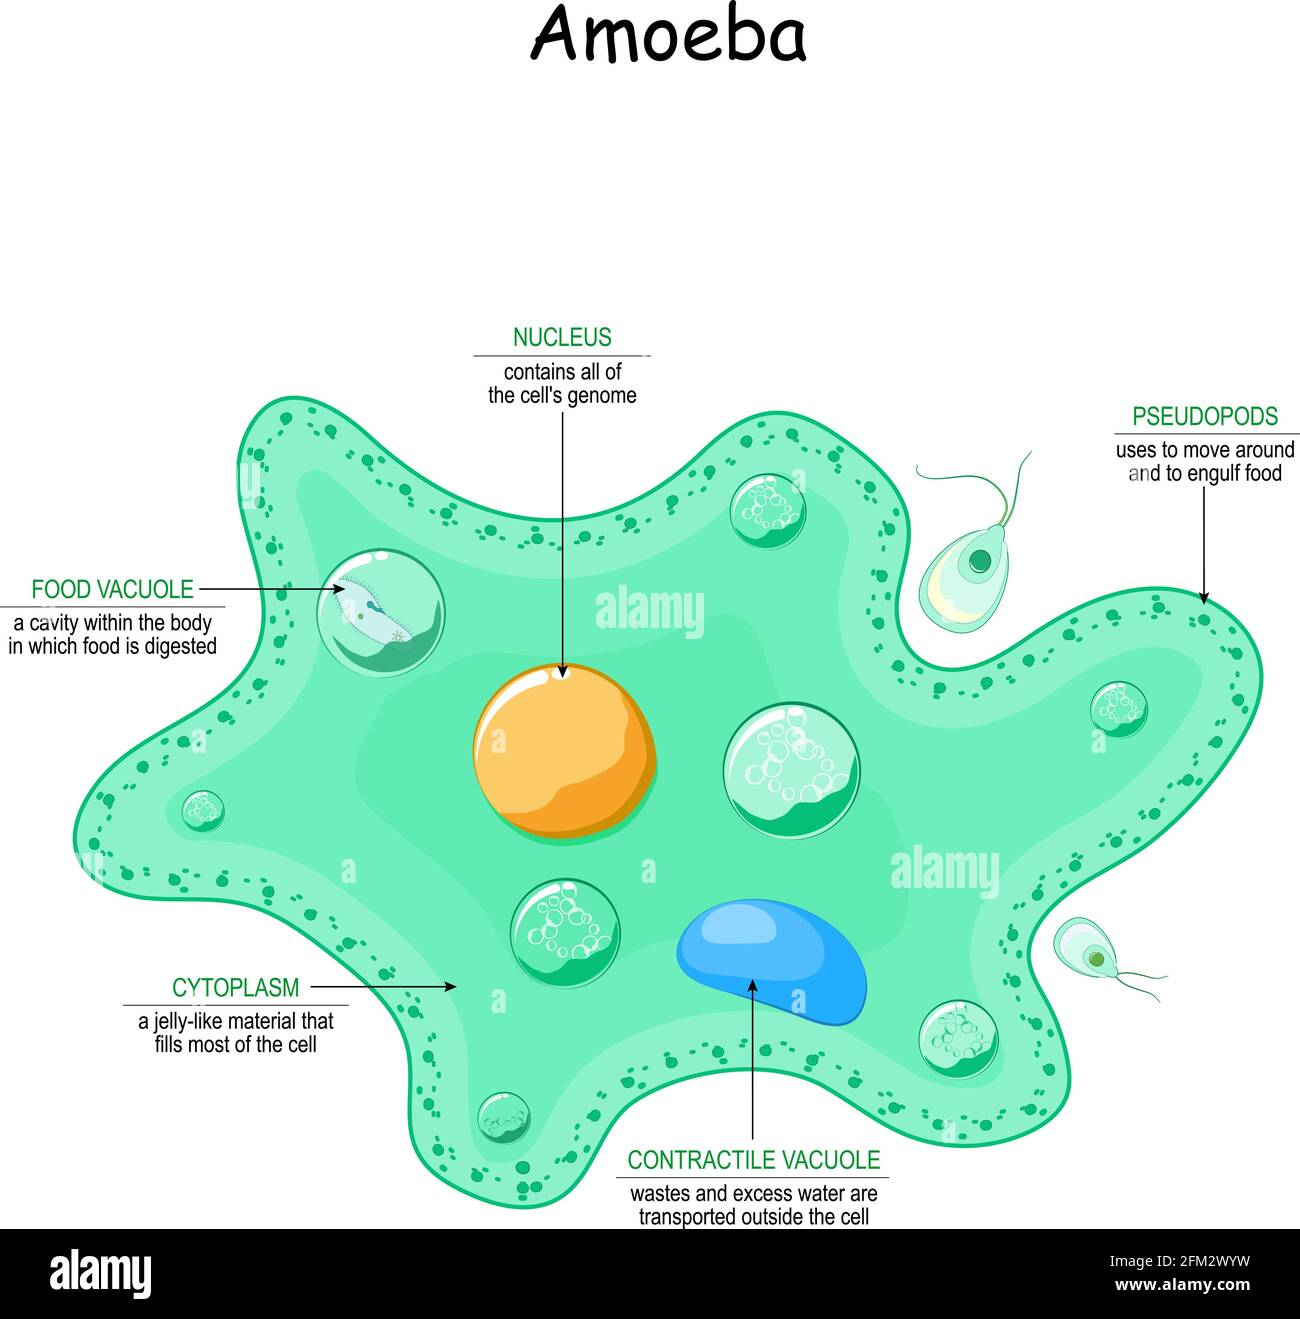 Anatomia ameba. Animale unicellulare con pseudopodi. Illustrazione vettoriale per uso medico, educativo e scientifico Illustrazione Vettoriale